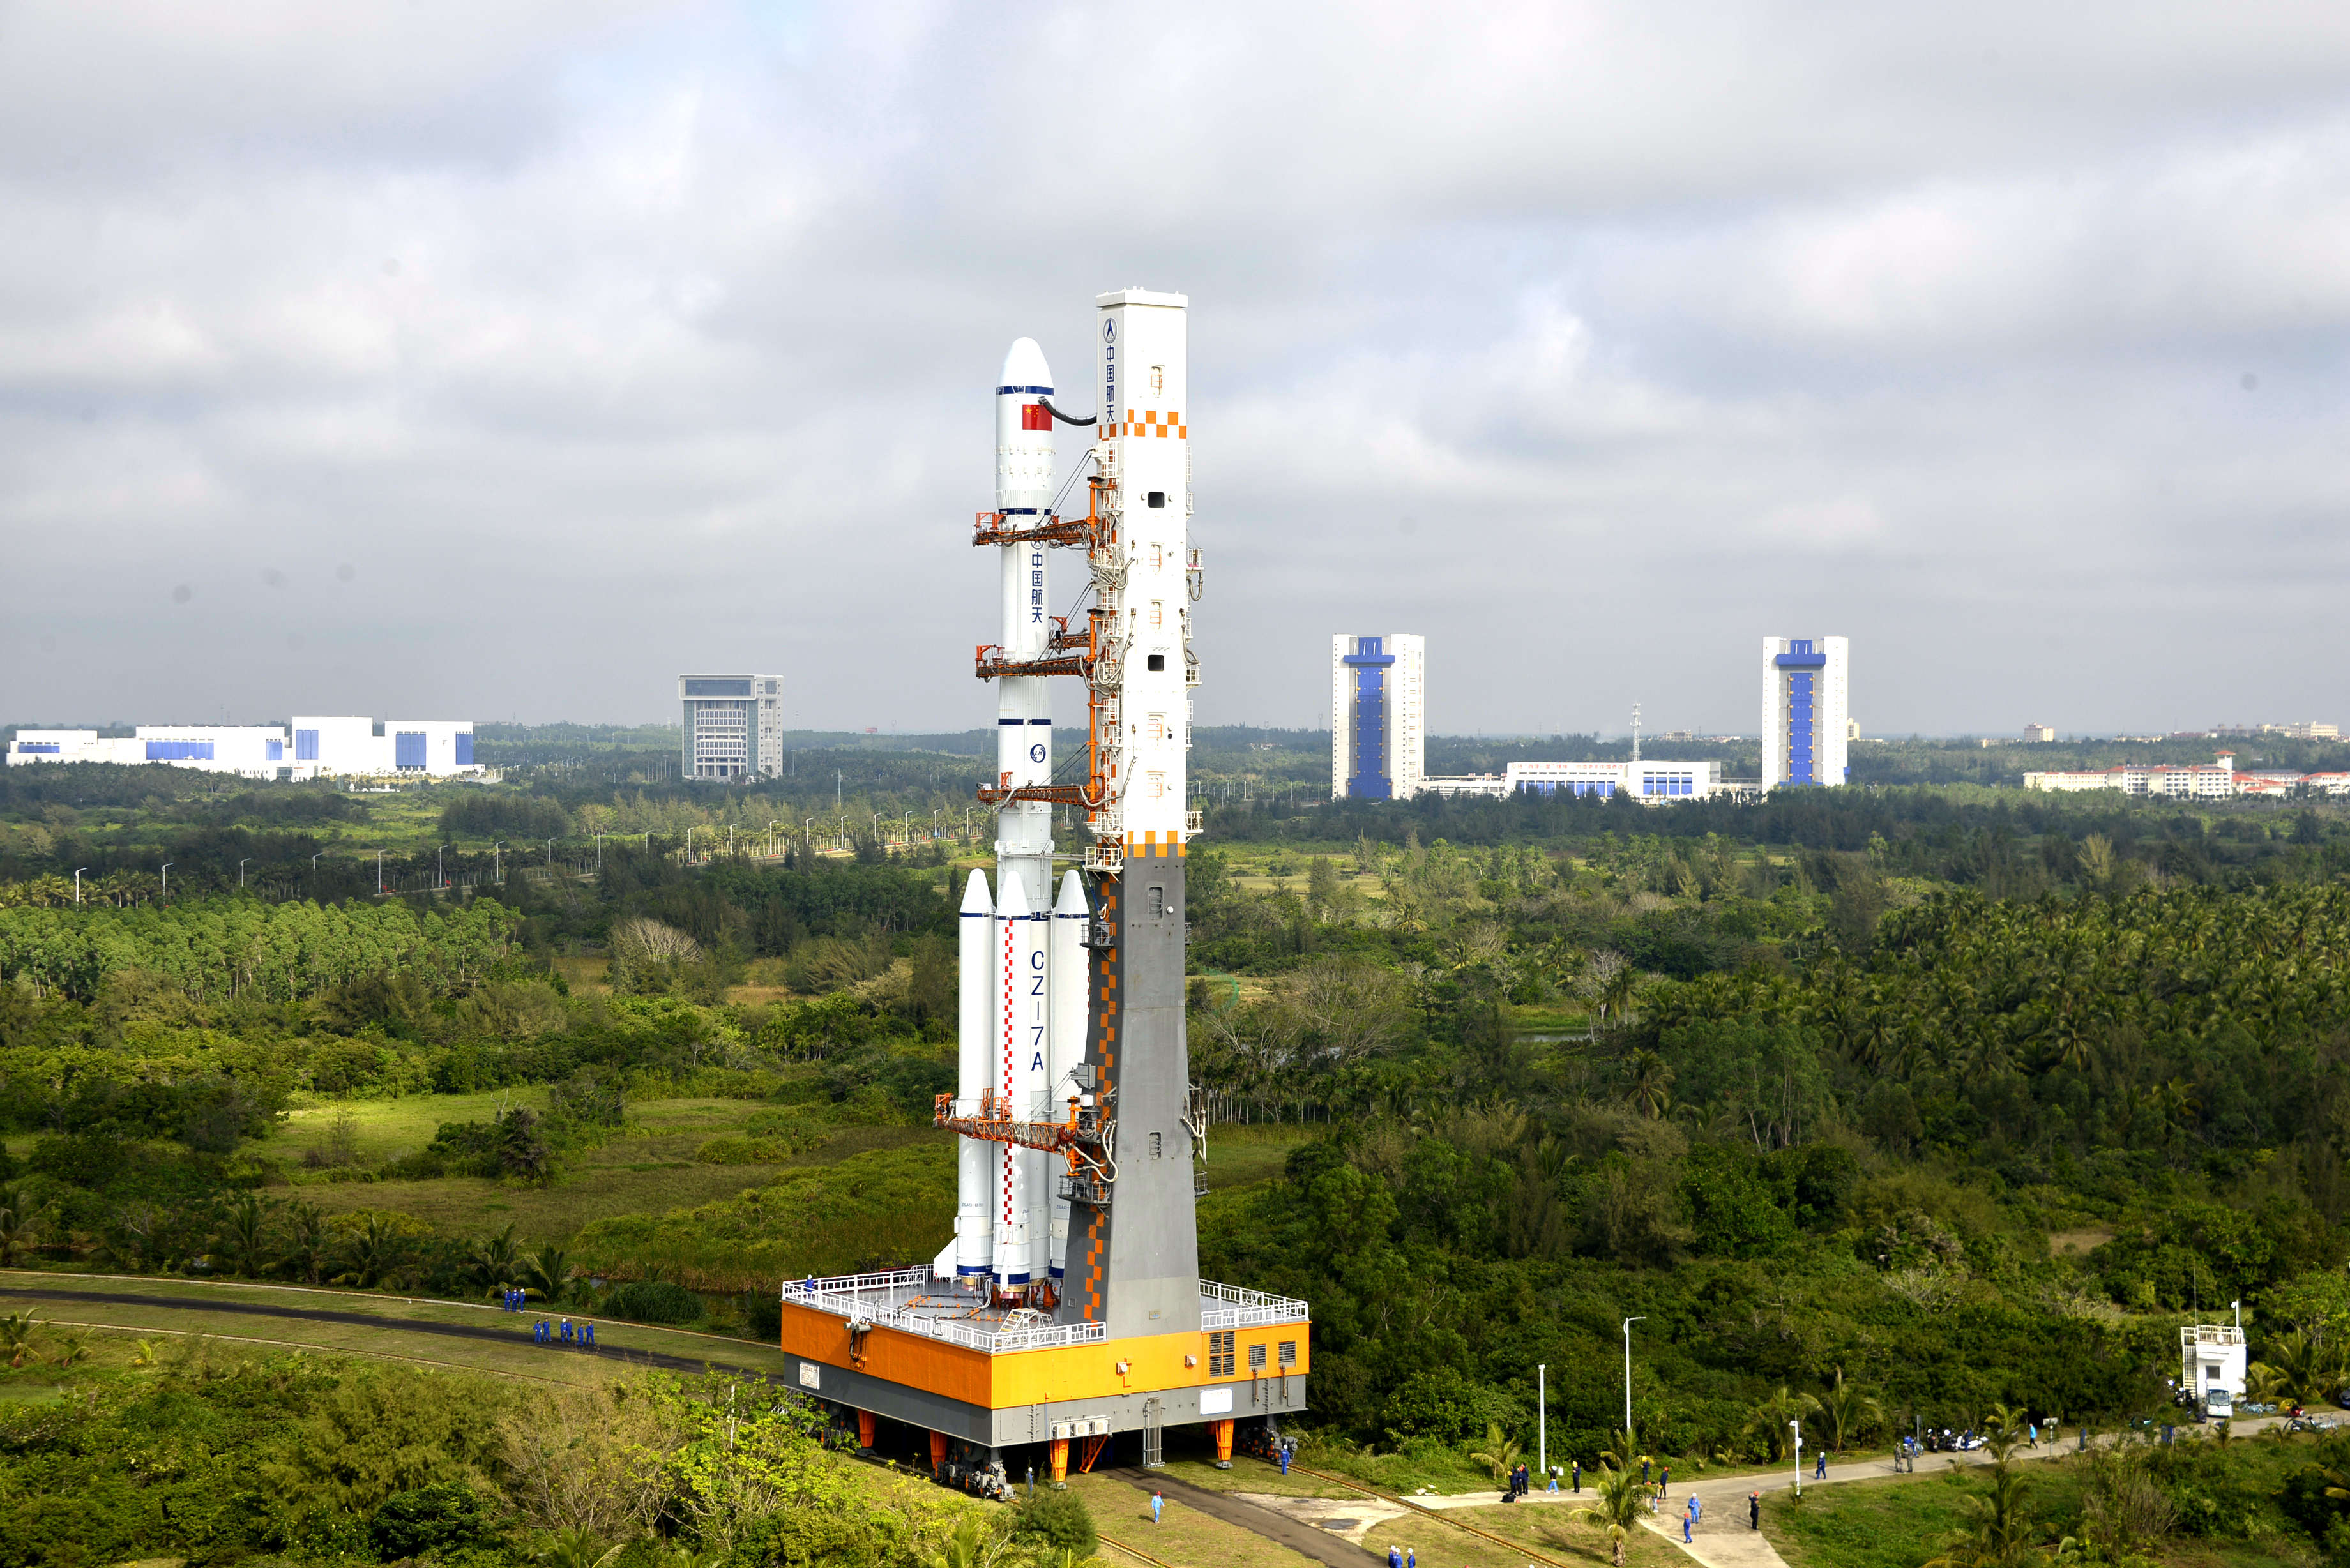 七系列火箭今年的第四次任务,标志着型号正式迈入了高强密度发射阶段